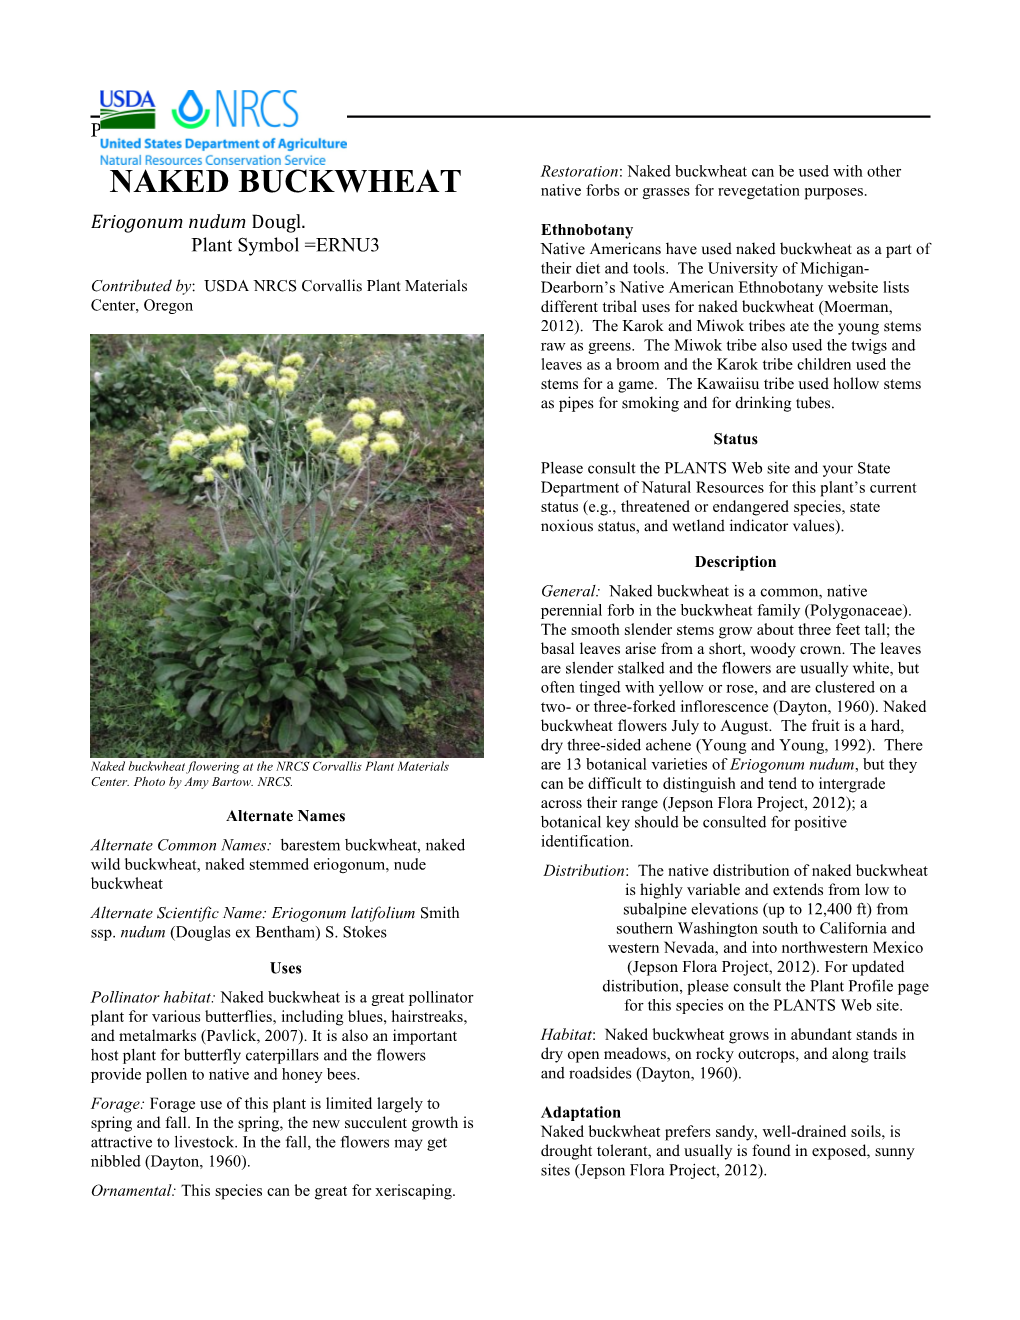 Naked Buckwheat